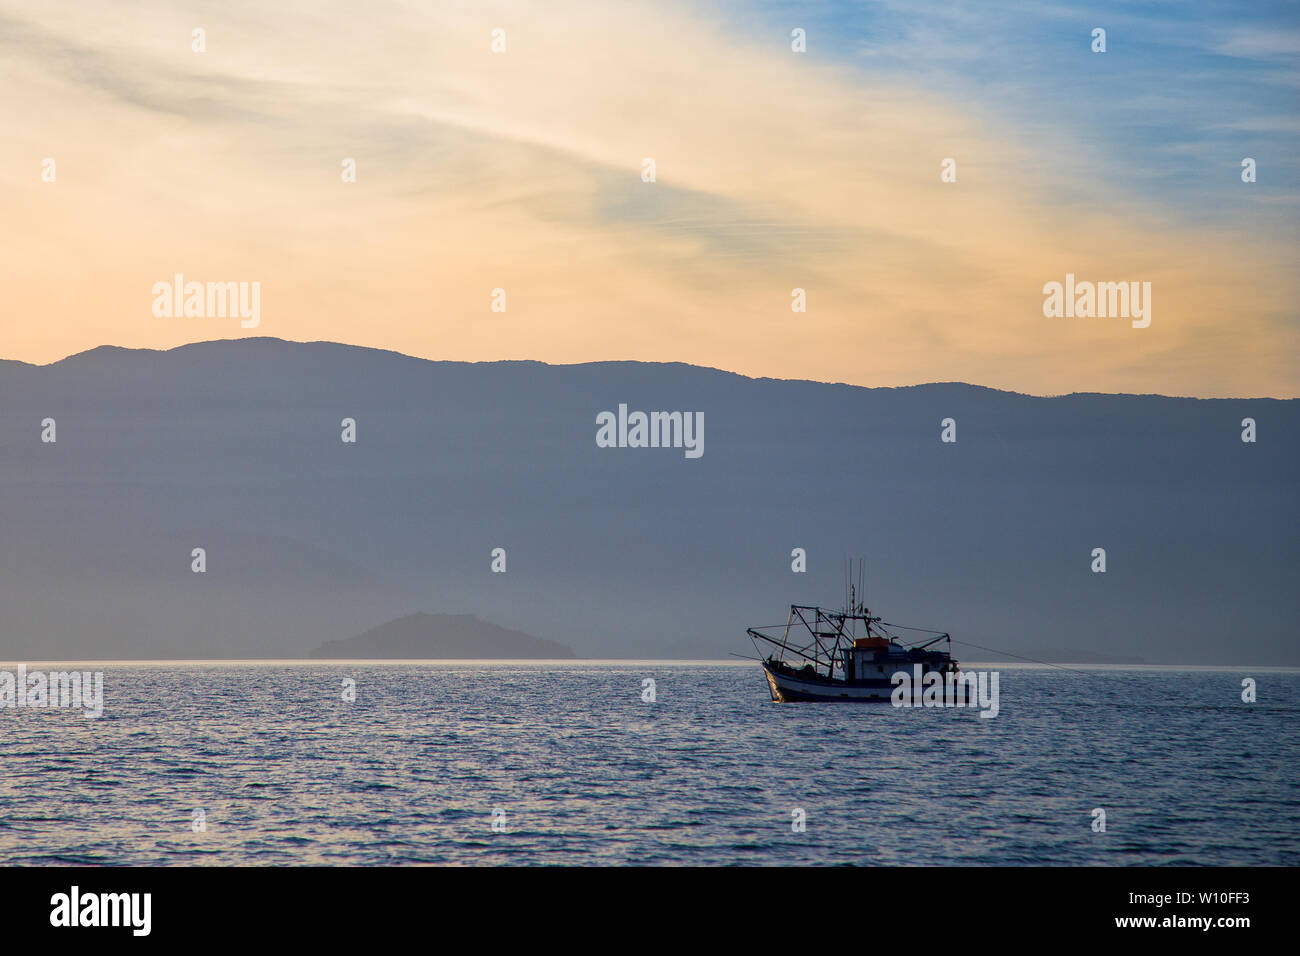 Bateau de pêche solitaire naviguant sur une mer générique avec des montagnes en arrière-plan Skyline Banque D'Images